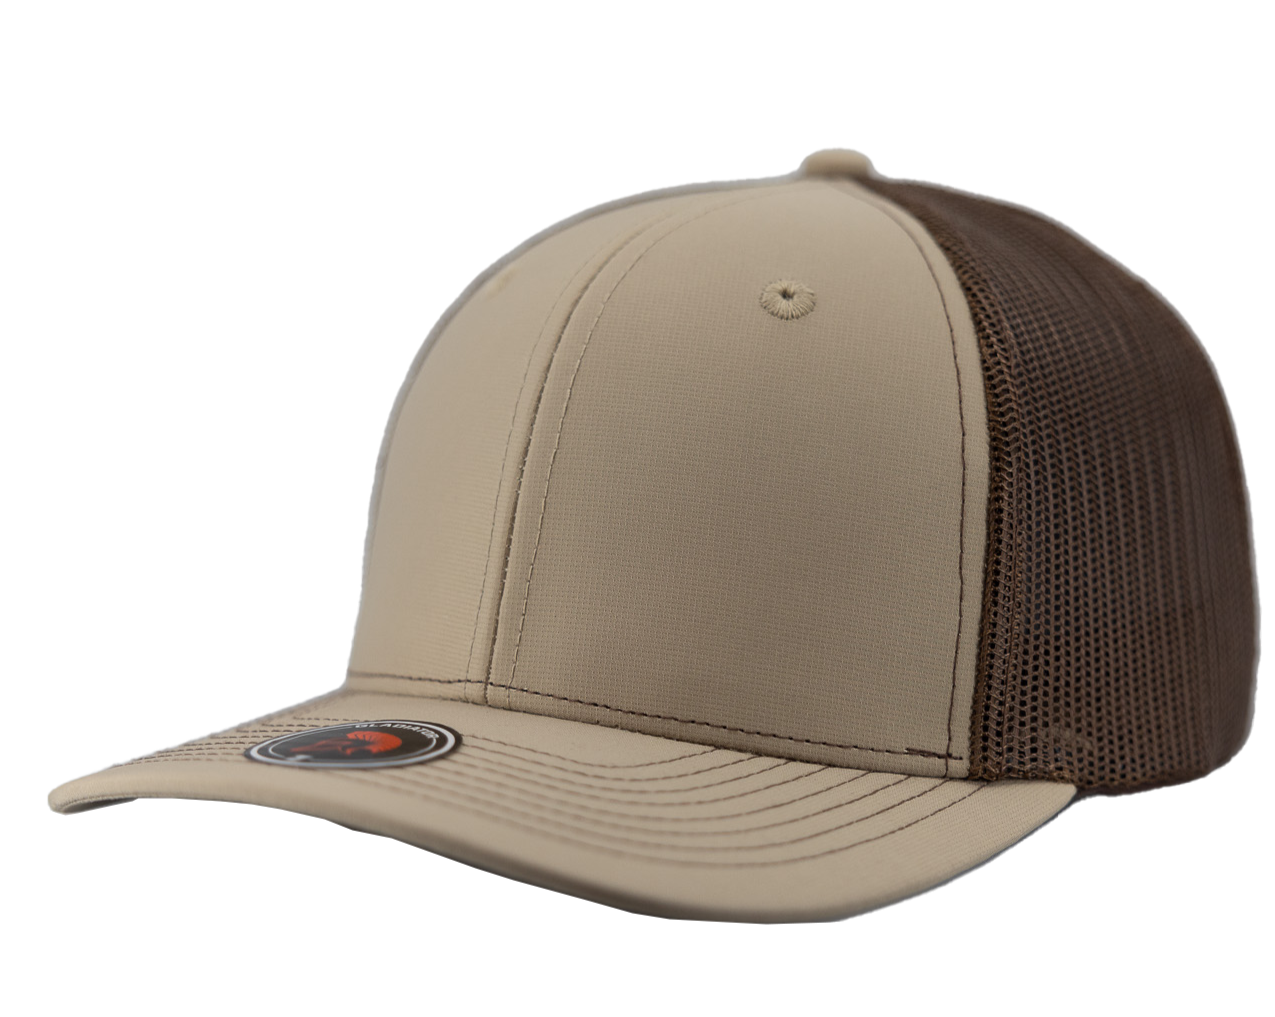 Gladiator-Water Repellent hat-Zapped Headwear-Snapback-Custom hat-Zapped Headwear-khaki-brown